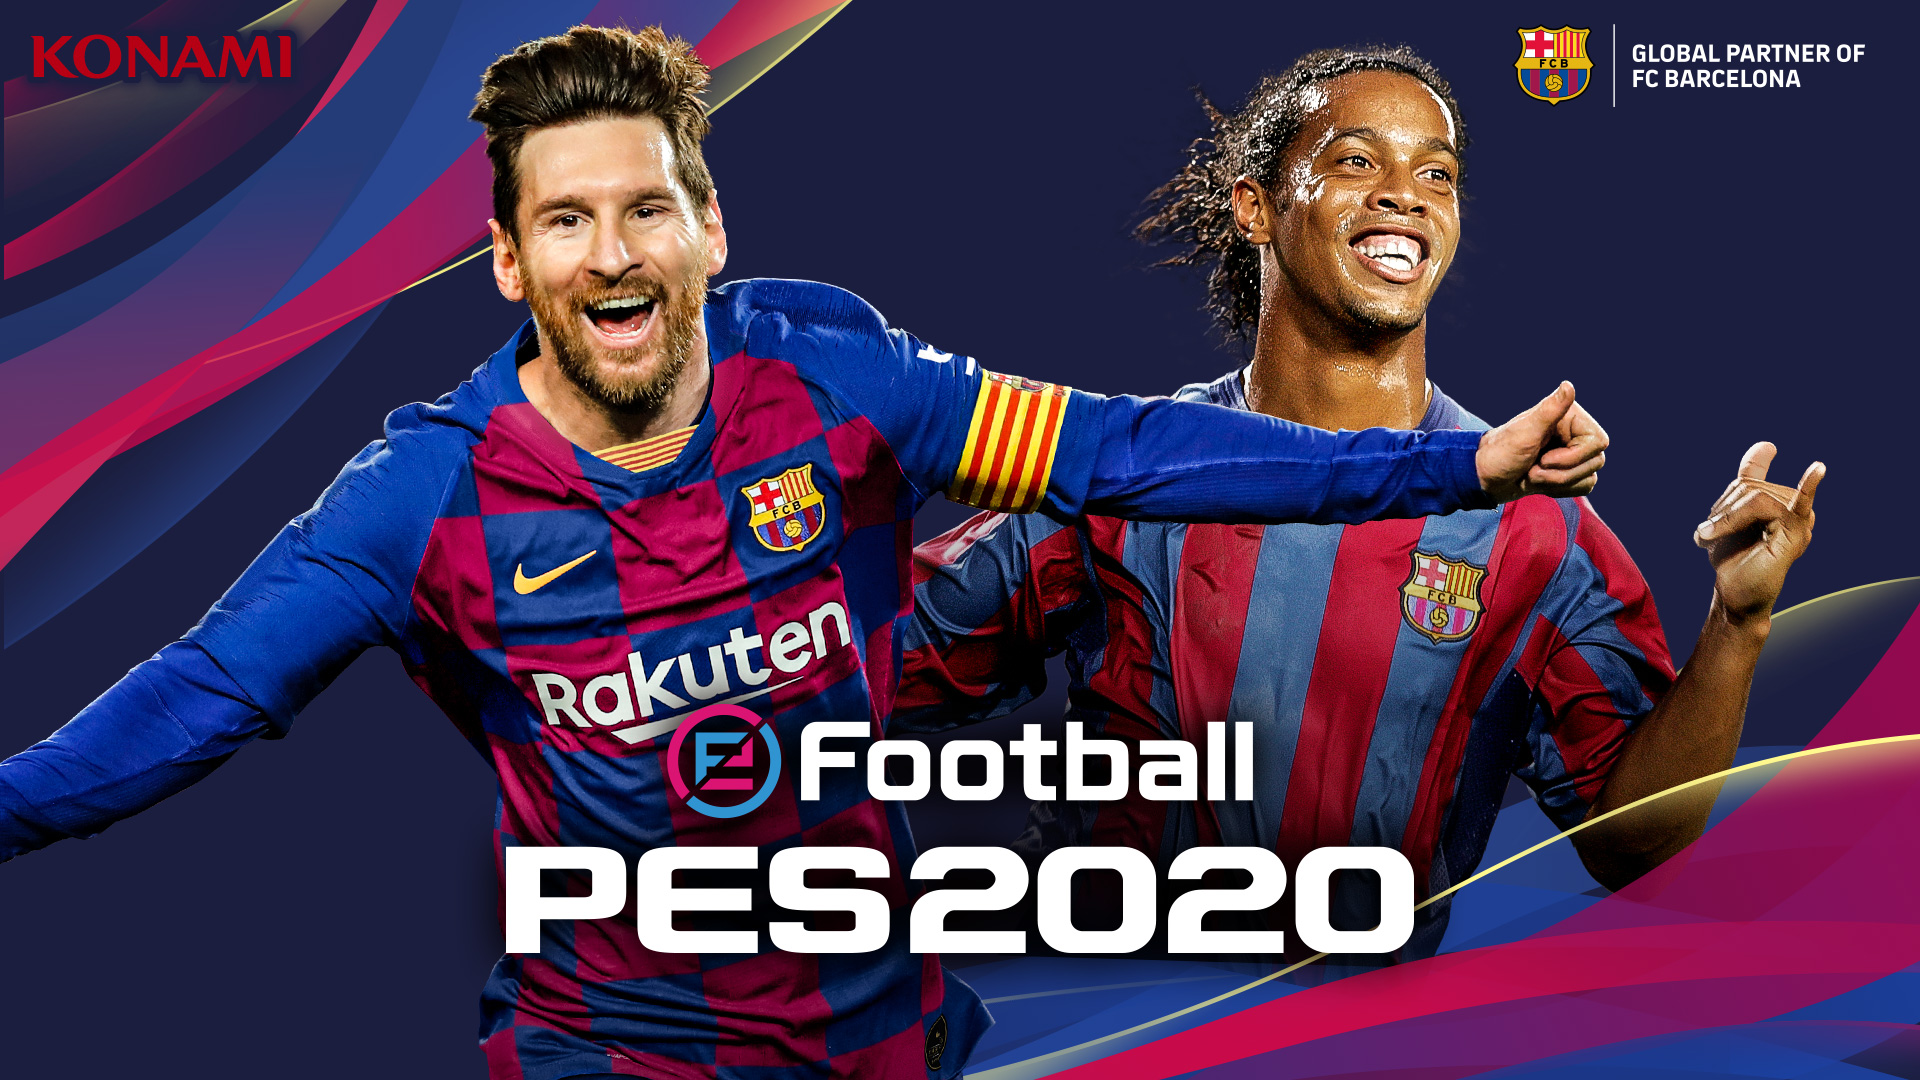 PES 2020 sẽ đổi tên thành eFootball, mở ra cuộc cách mạng mới về gameplay